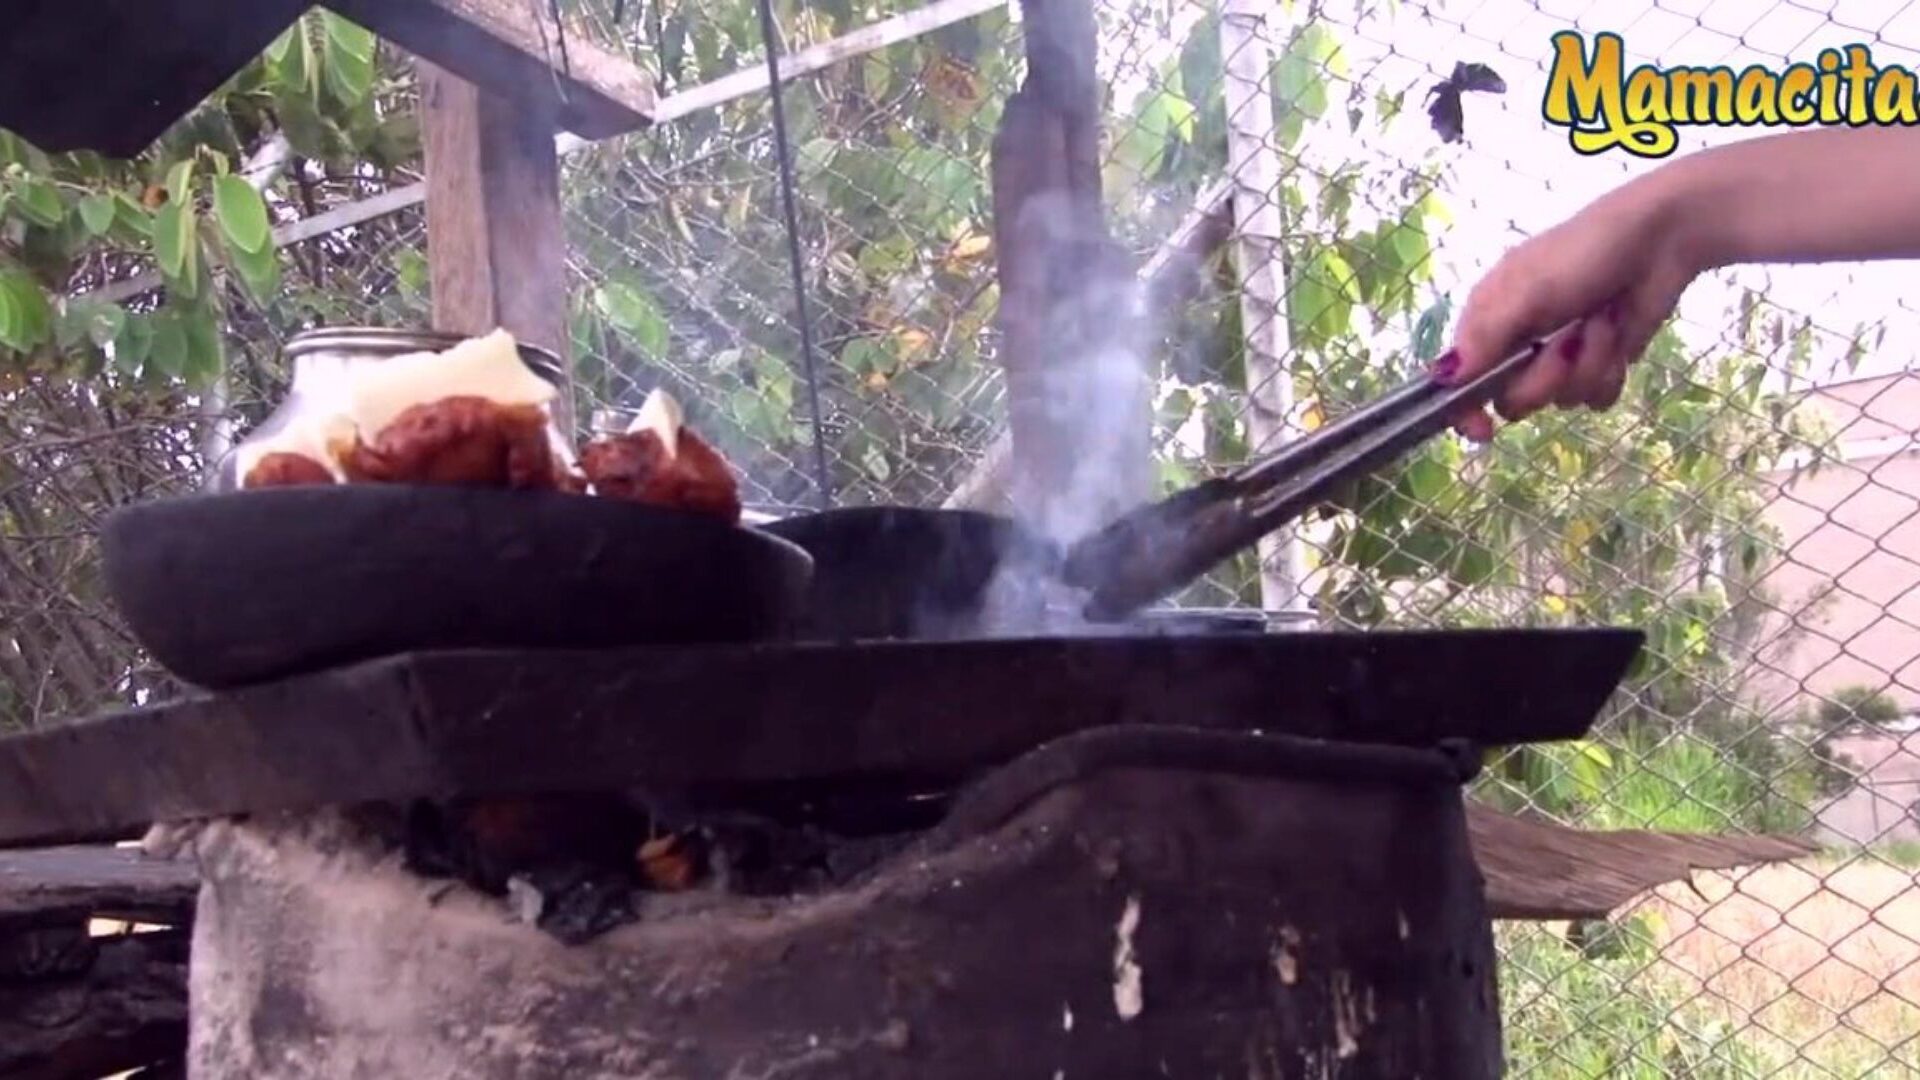 mamacitaz - super horký kolumbijský prodejce masa touží po jiném druhu masa